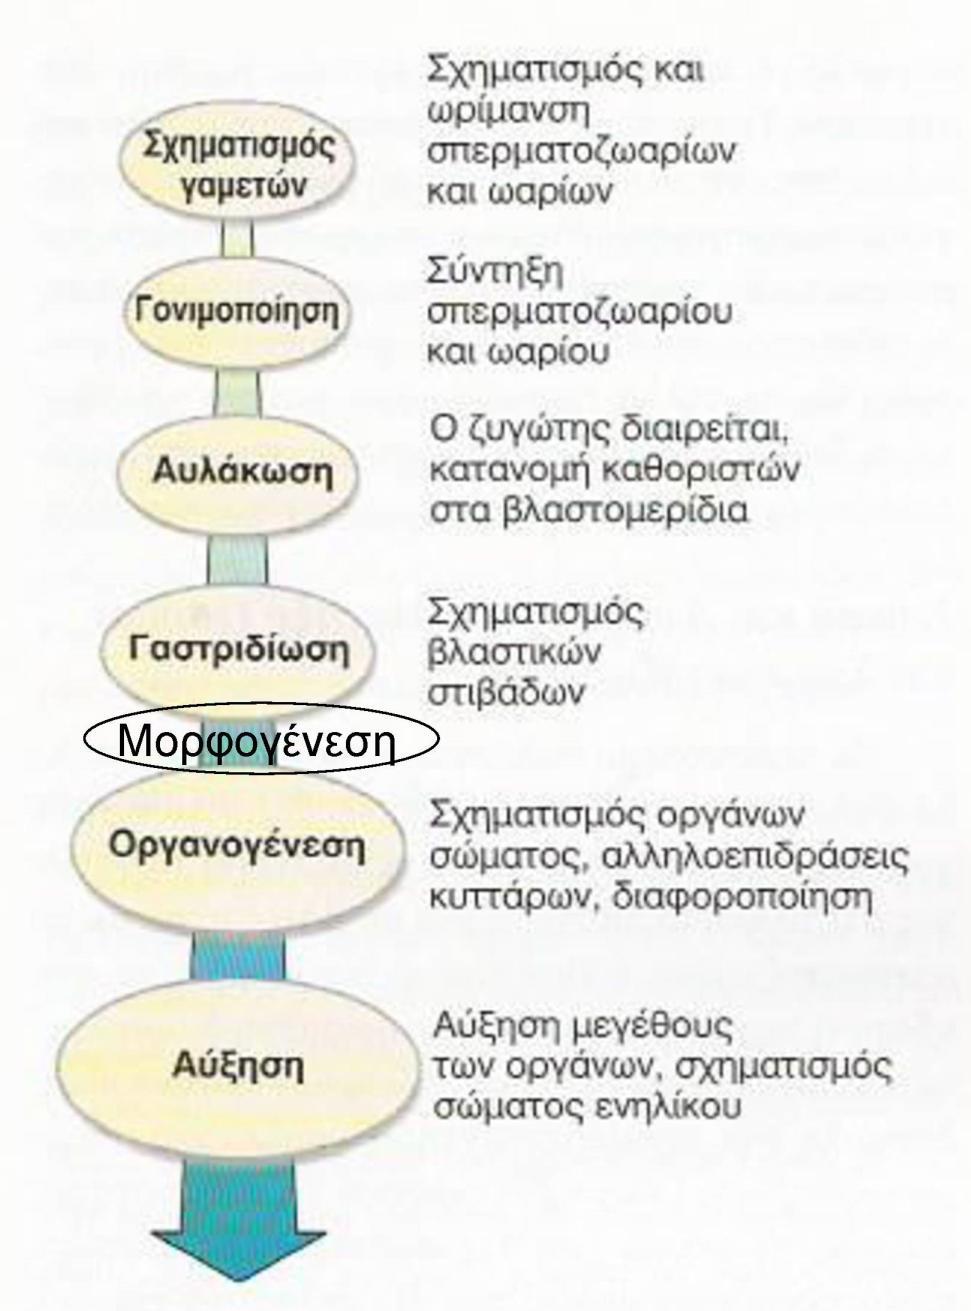 Εγγενής αναπαραγωγή Σχηματισμός και ωρίμανση ωαρίων και σπερματοζωαρίων και ωαρίων Σύντηξη ωαρίου (απλοειδές) και σπερματοζωαρίου (απλοειδές), σχηματισμός ζυγωτού (διπλοειδές) Ταχείες μιτωτικές